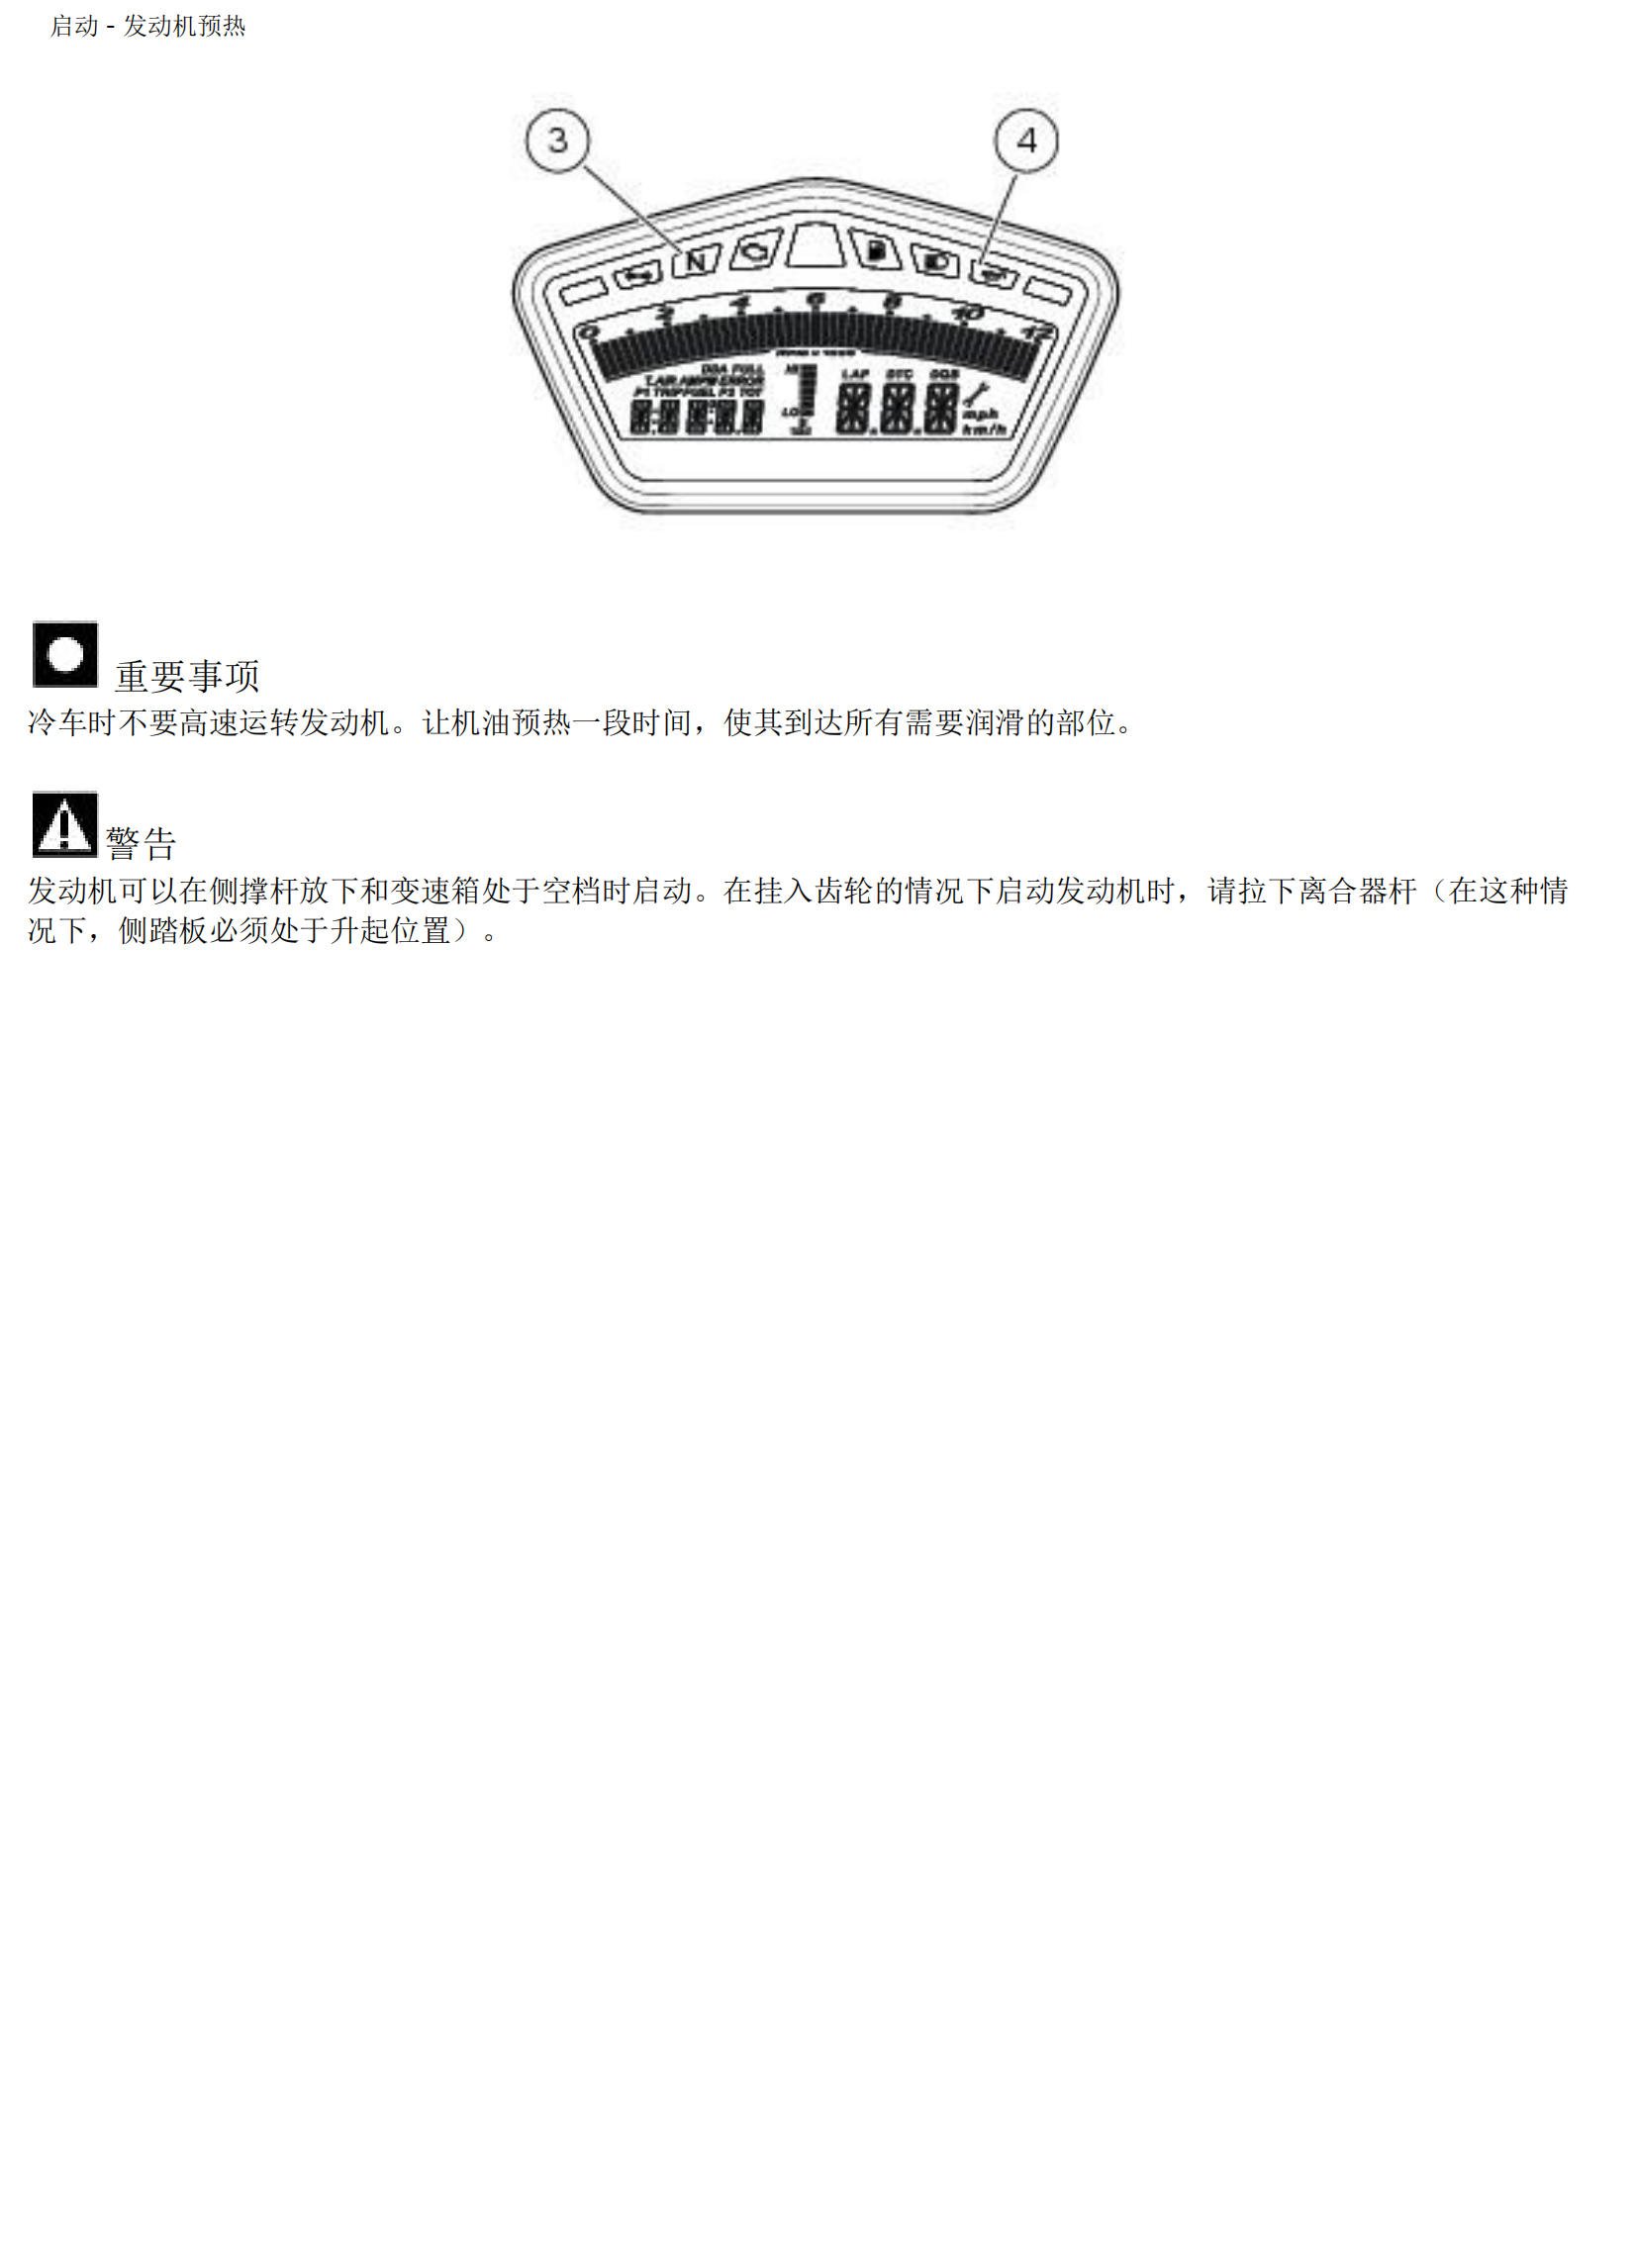 简体中文2010-2012年杜卡迪骇客796 Ducati Hypermotard 796 维修手册插图2